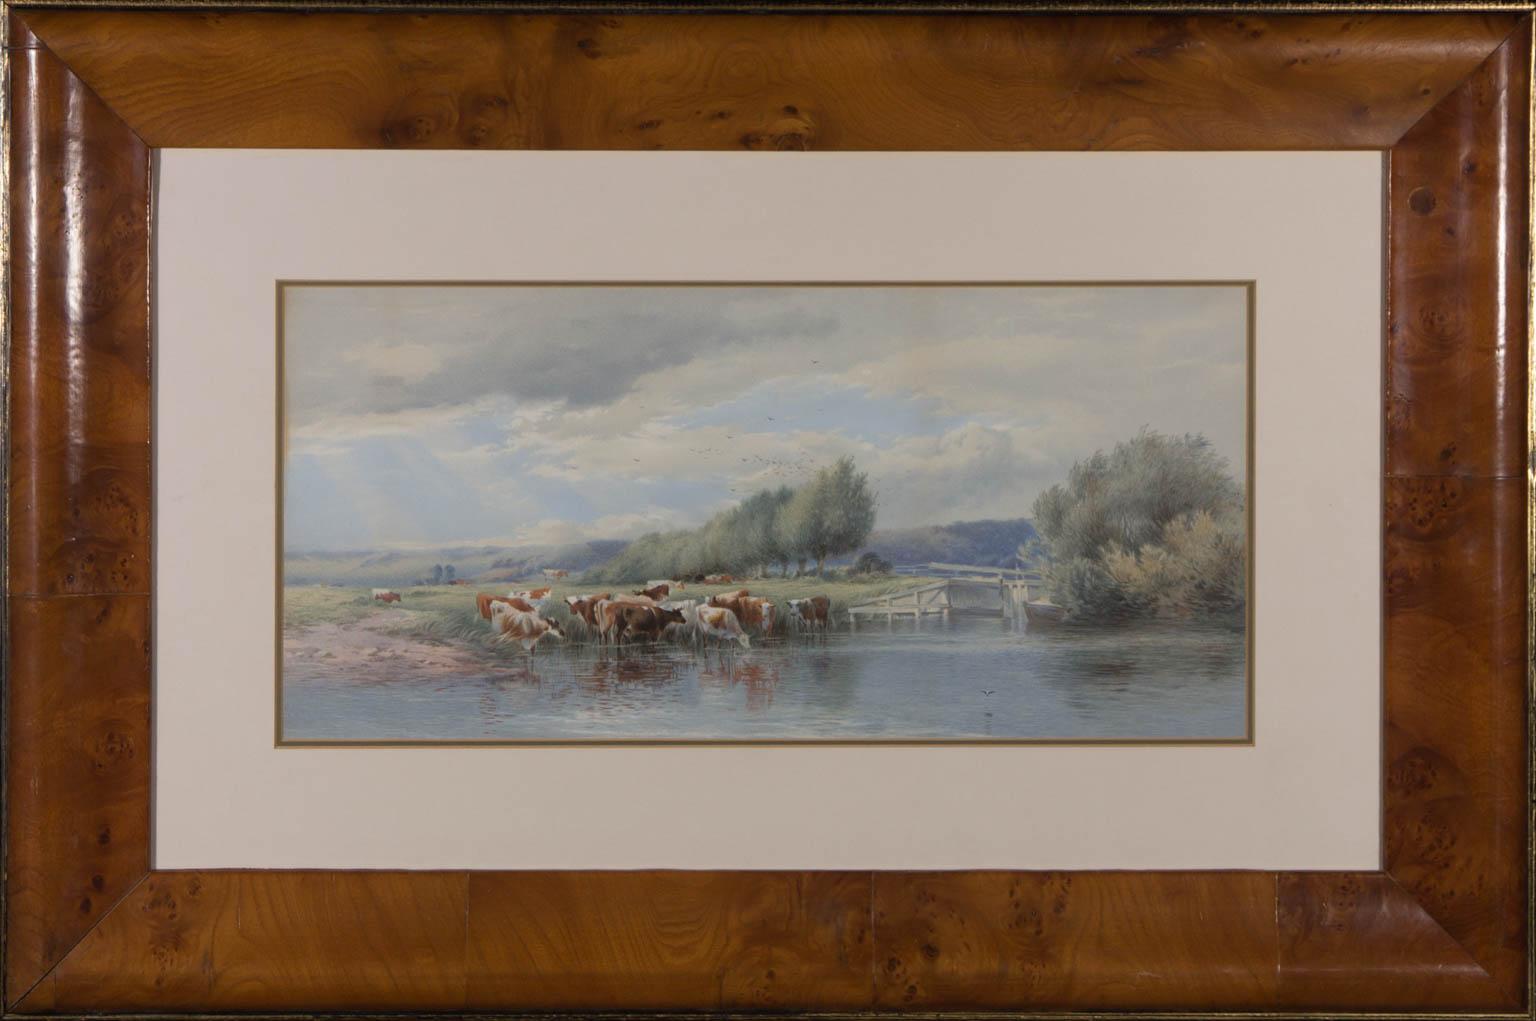 Landscape Art Unknown - Aquarelle du 20e siècle encadrée - Vaches au bord de la rivière